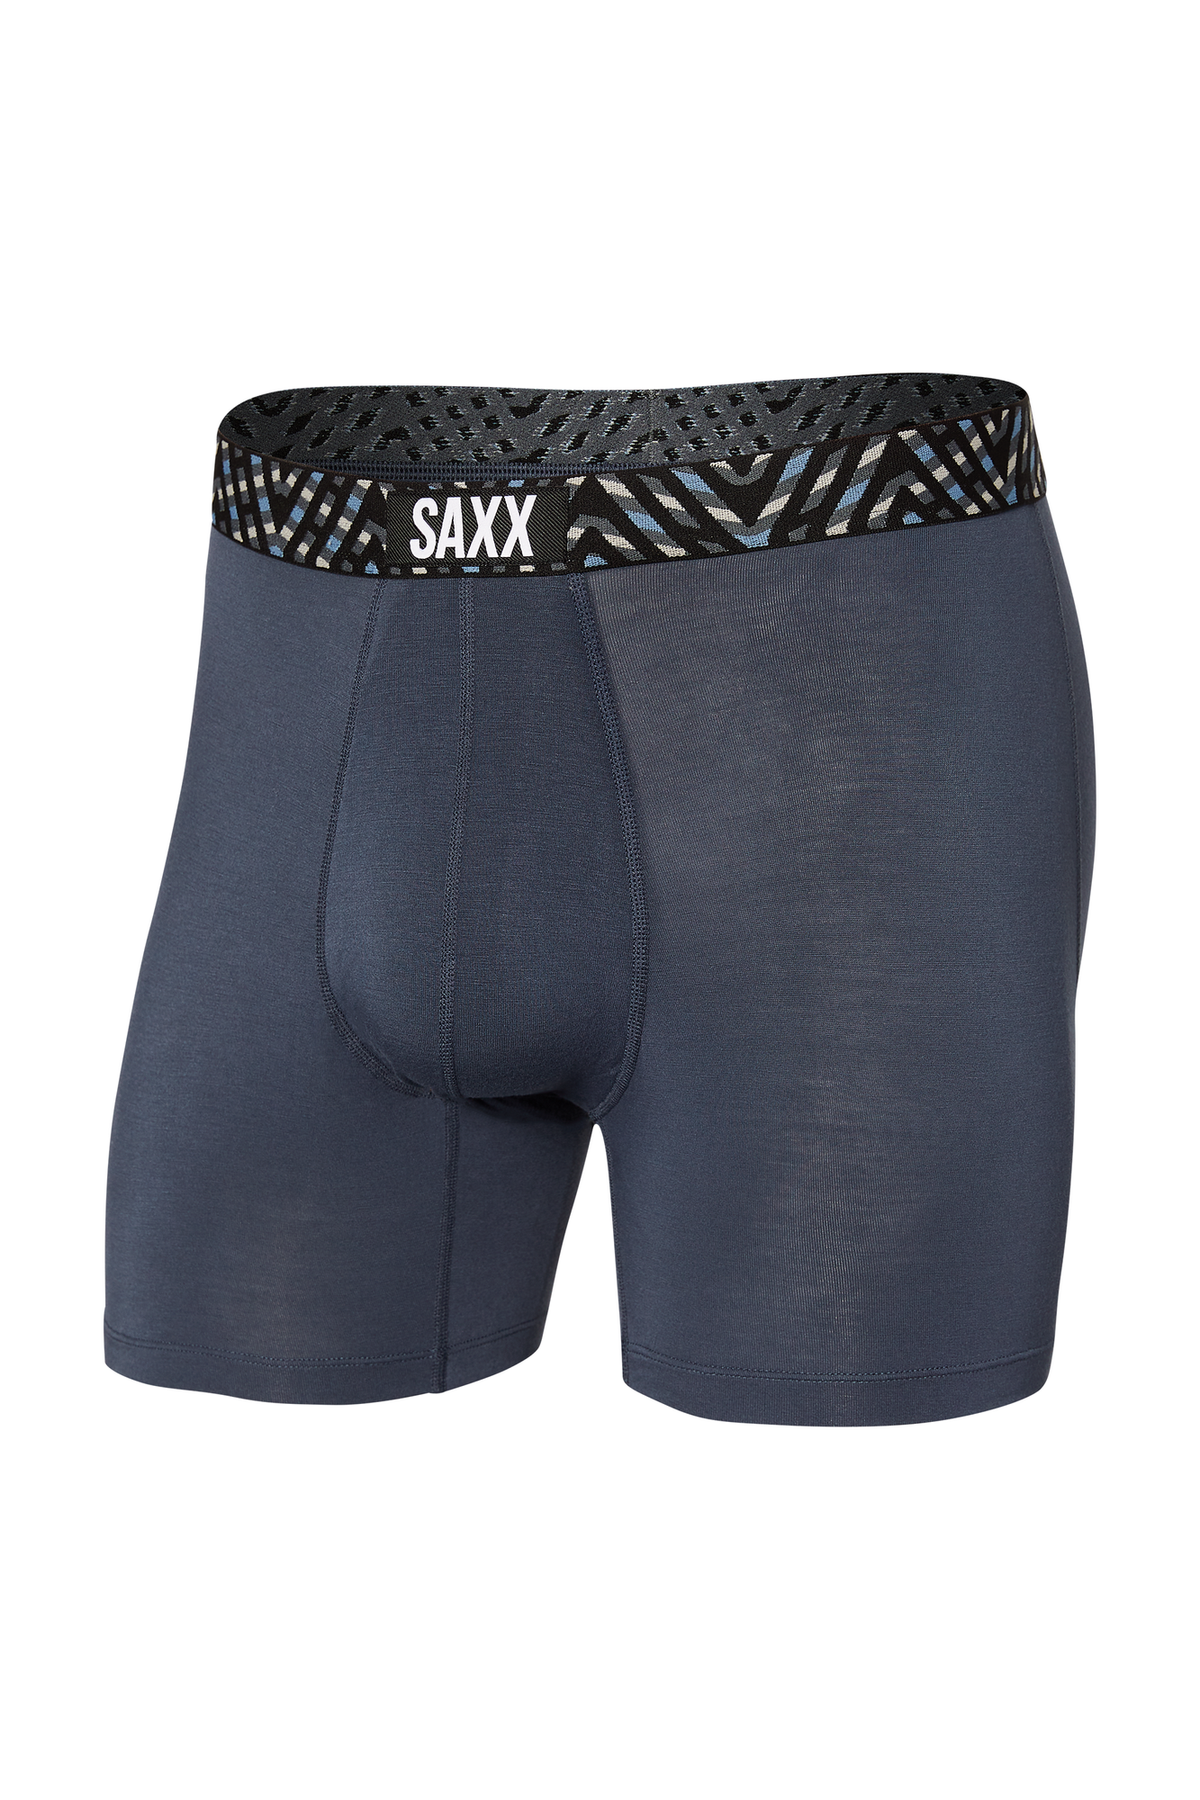 SAXX Underwear Ultra Boxer Brief Fly 2 Pack Black/grey Medium for sale  online